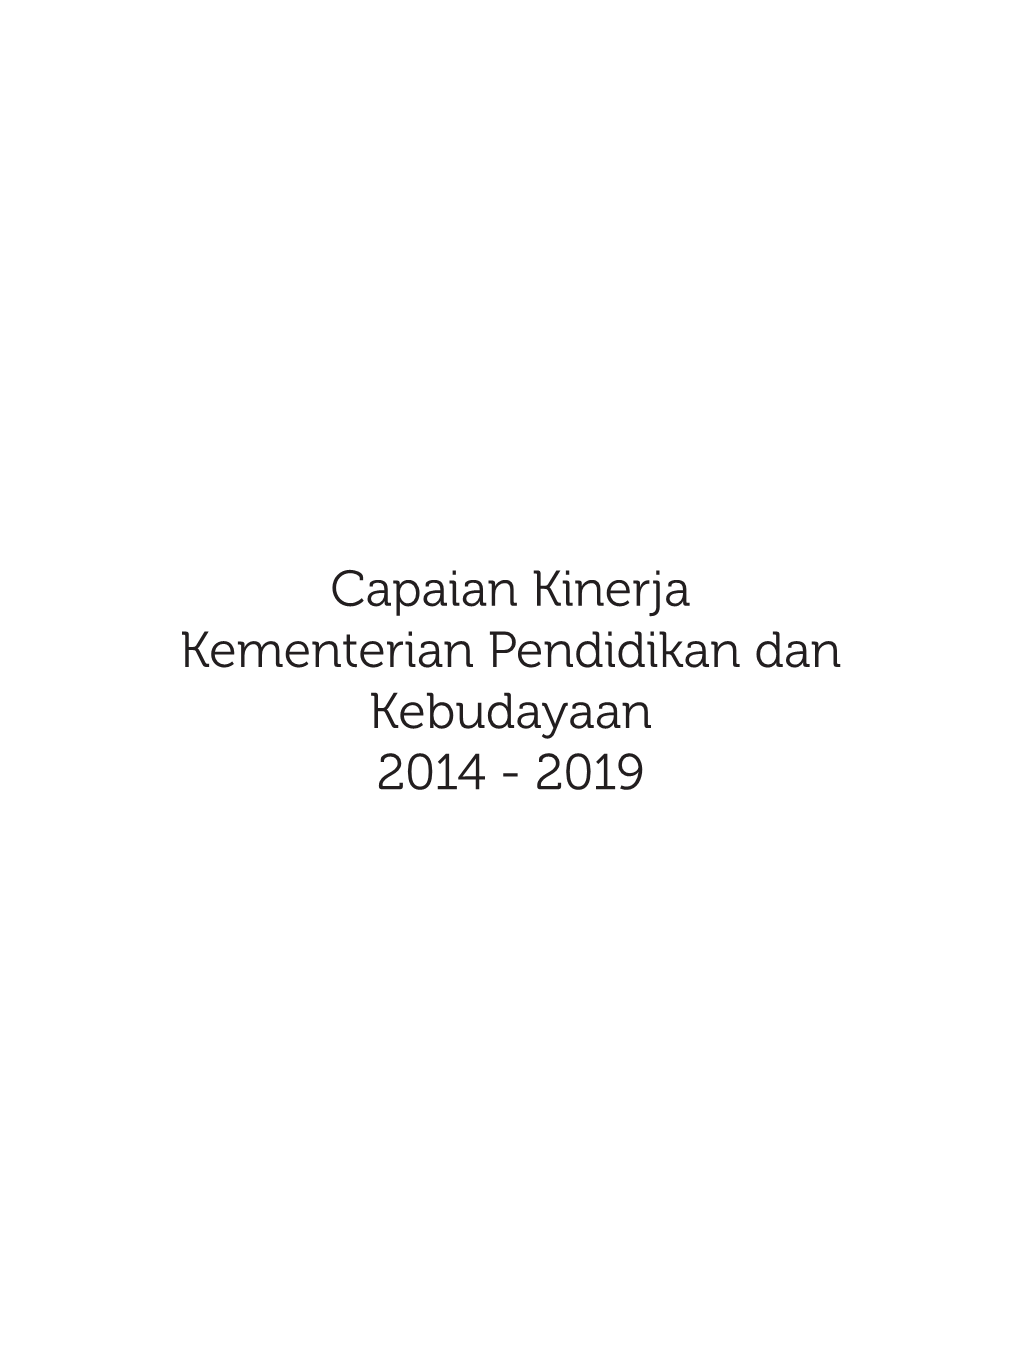 Capaian Kinerja Kementerian Pendidikan Dan Kebudayaan 2014 - 2019 Capaian Kinerja Kementerian Pendidikan Dan Kebudayaan 2014 - 2019